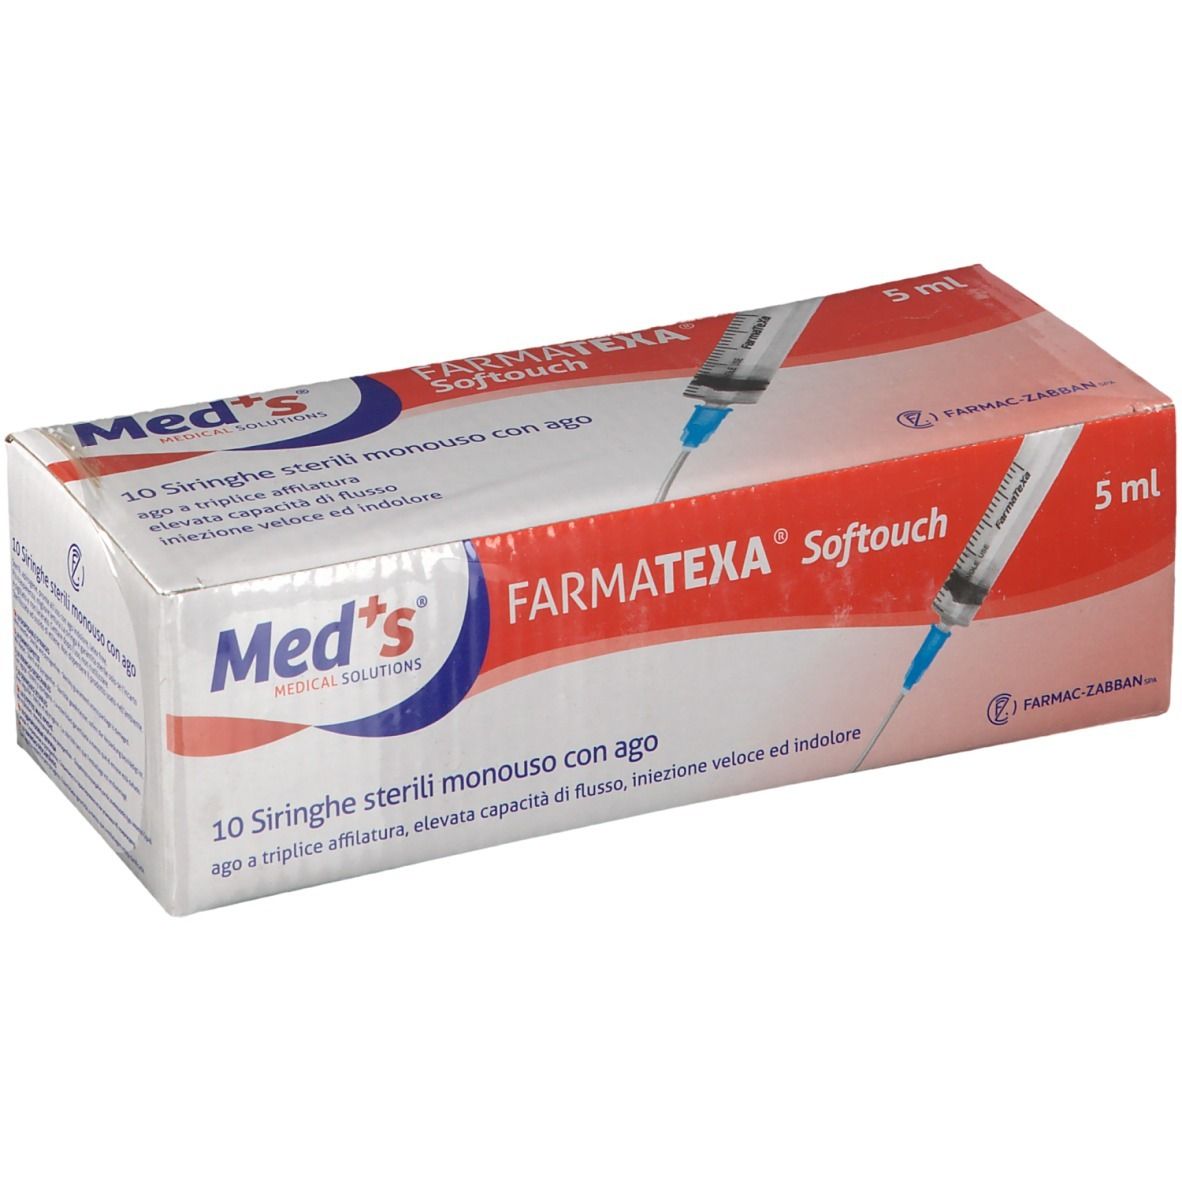 Farmatexa® Softouch Siringhe 5 ml